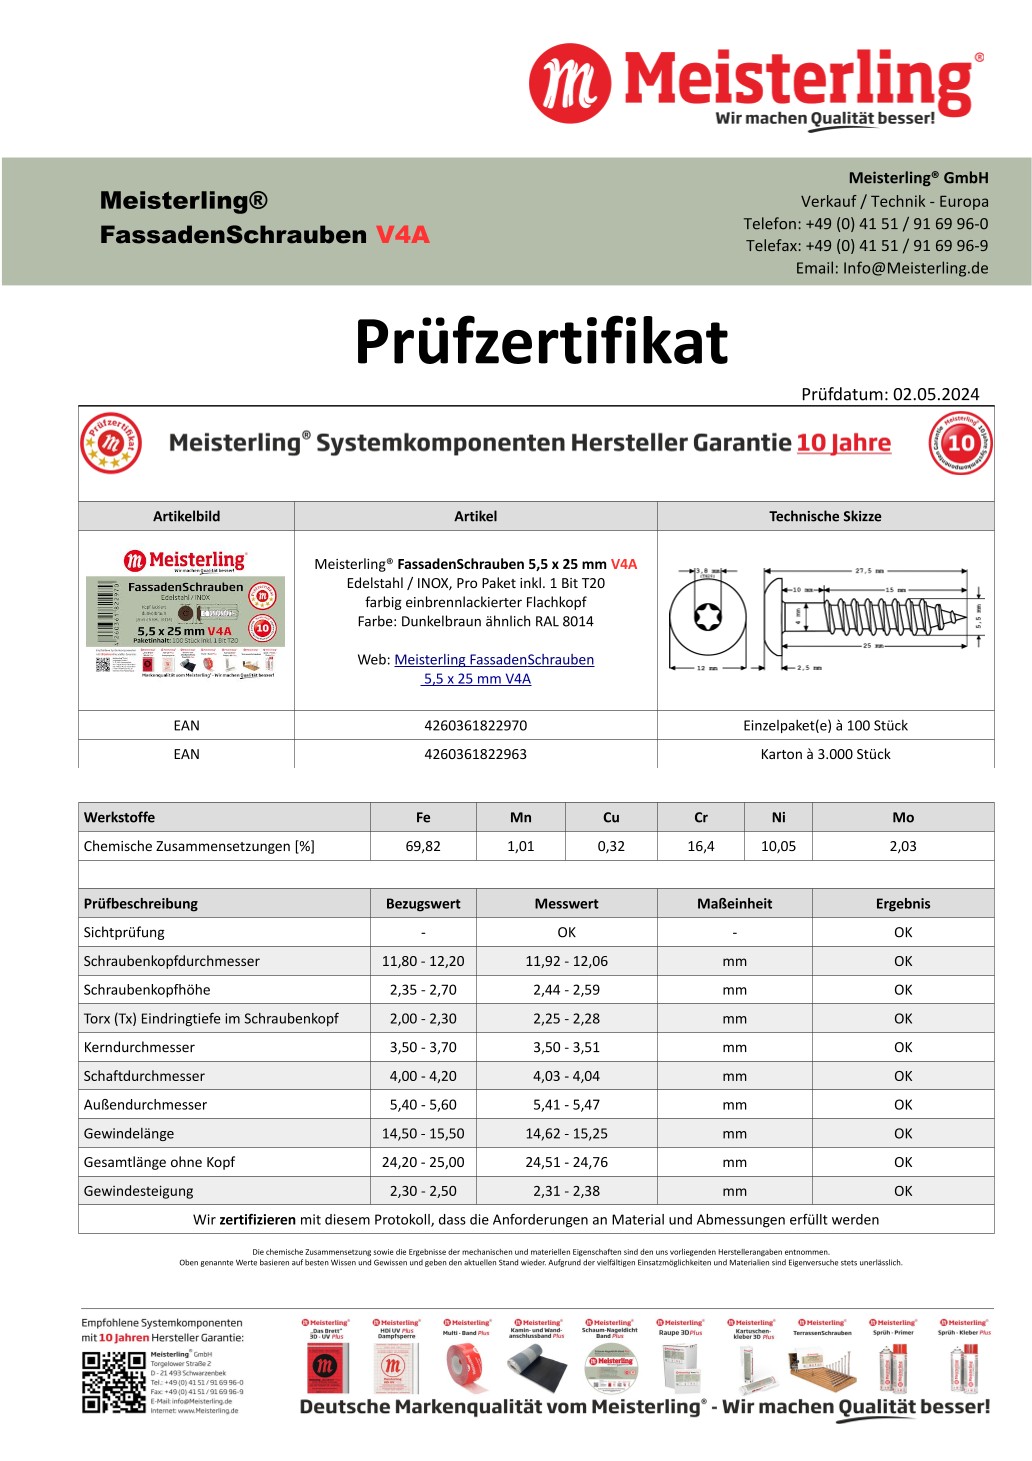 Prüfzertifikat Meisterling® FassadenSchrauben 5,5 x 25 mm V4a dunkelbraun